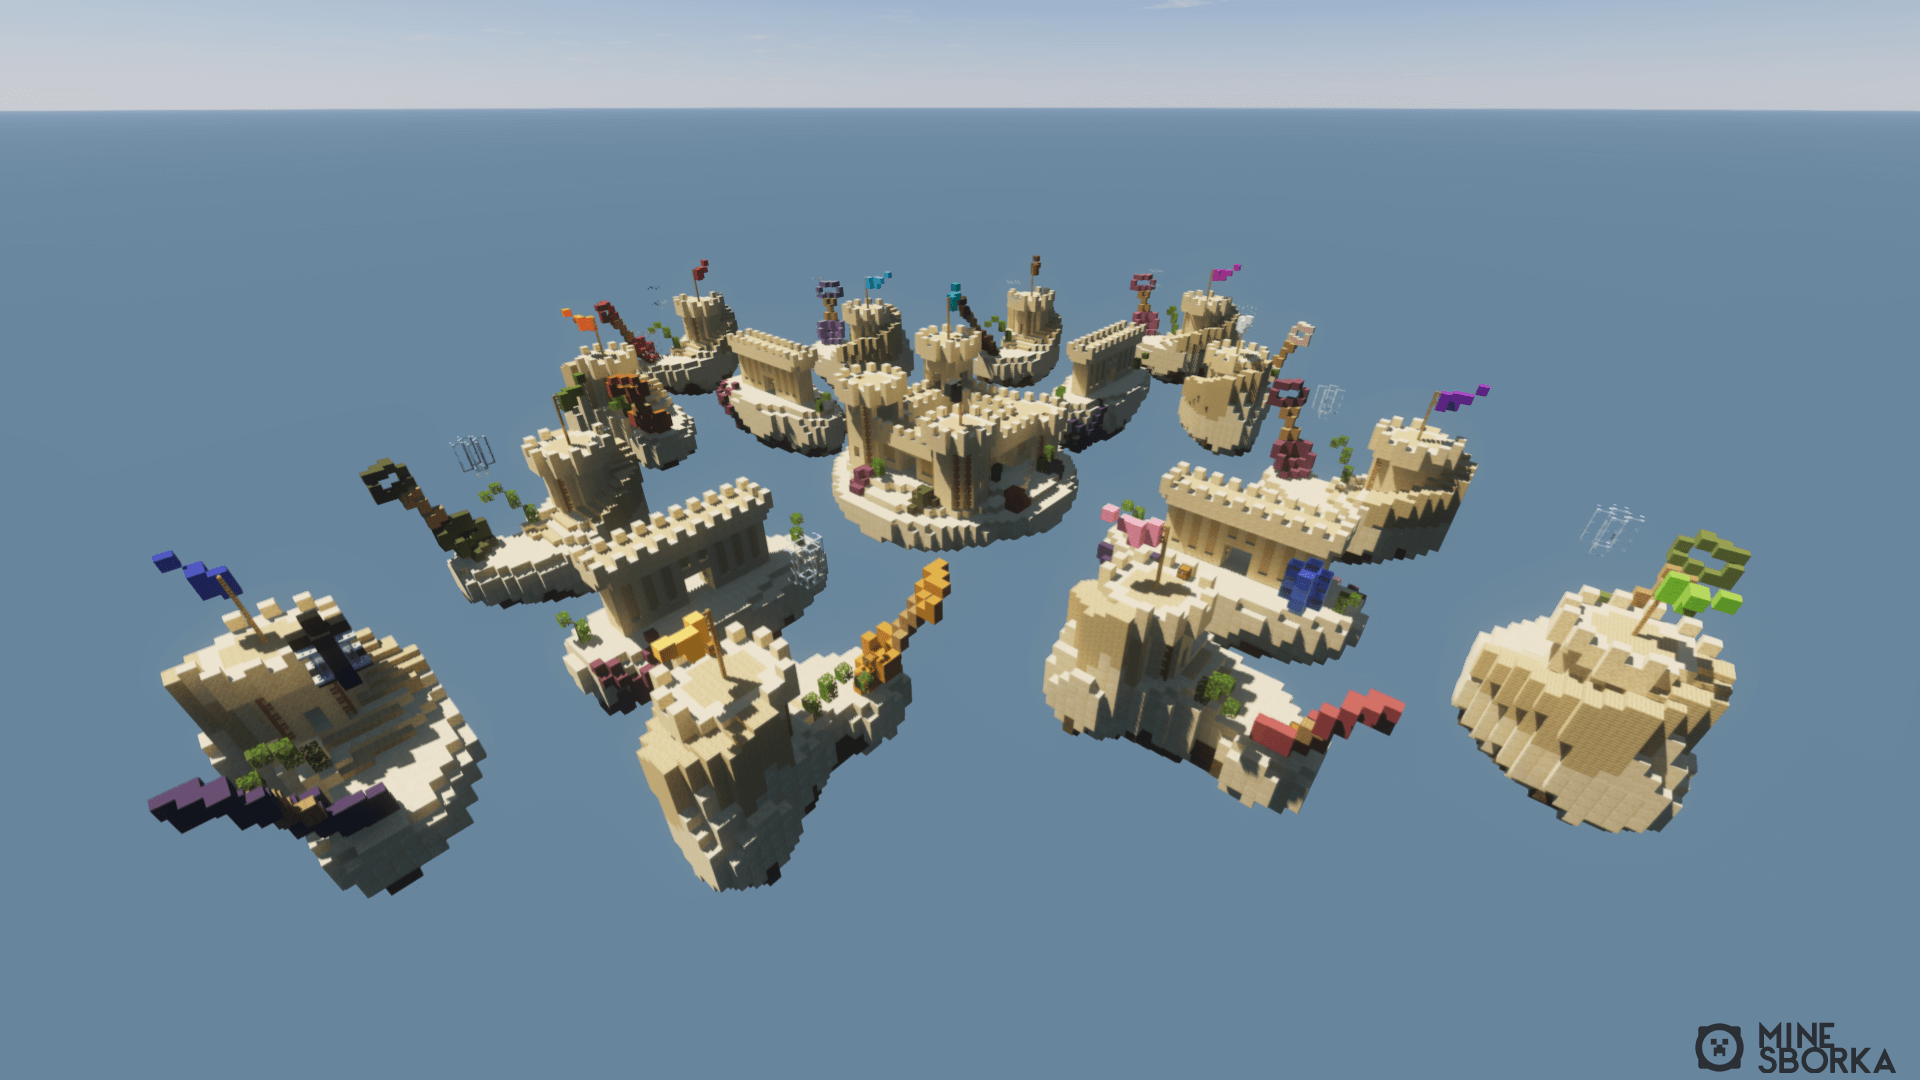 Арена Sandcastle для мини-игры SkyWars с сервера CubeCraft